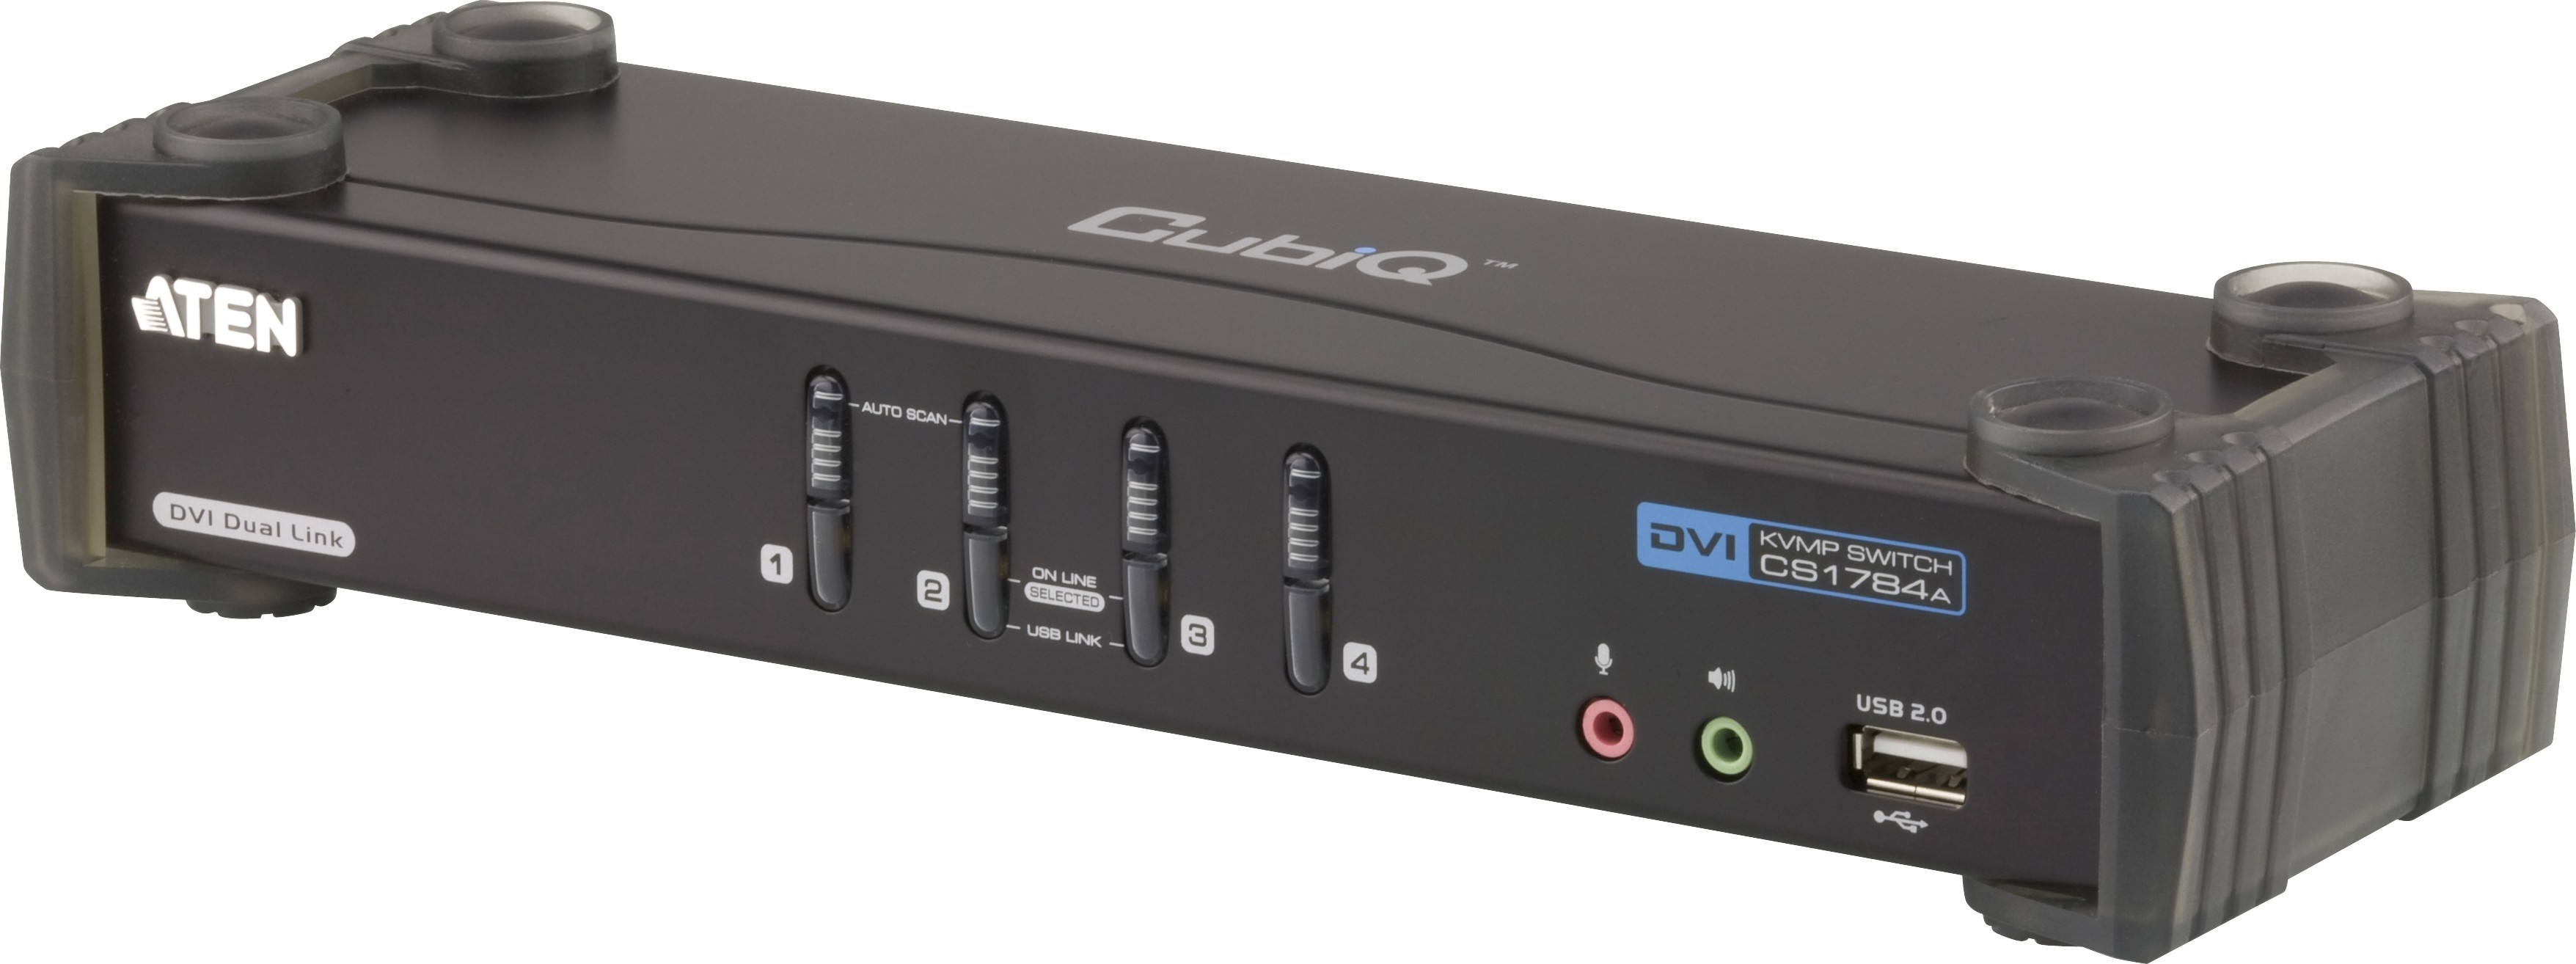 Переключатель KVM (КВМ) ATEN CS1784A, 4-ПК, USB, USB, видео DVI-I 2560x1600, 4-комплекта KVM-кабелей DVI-D (CS1784A-AT-G) - фото 1